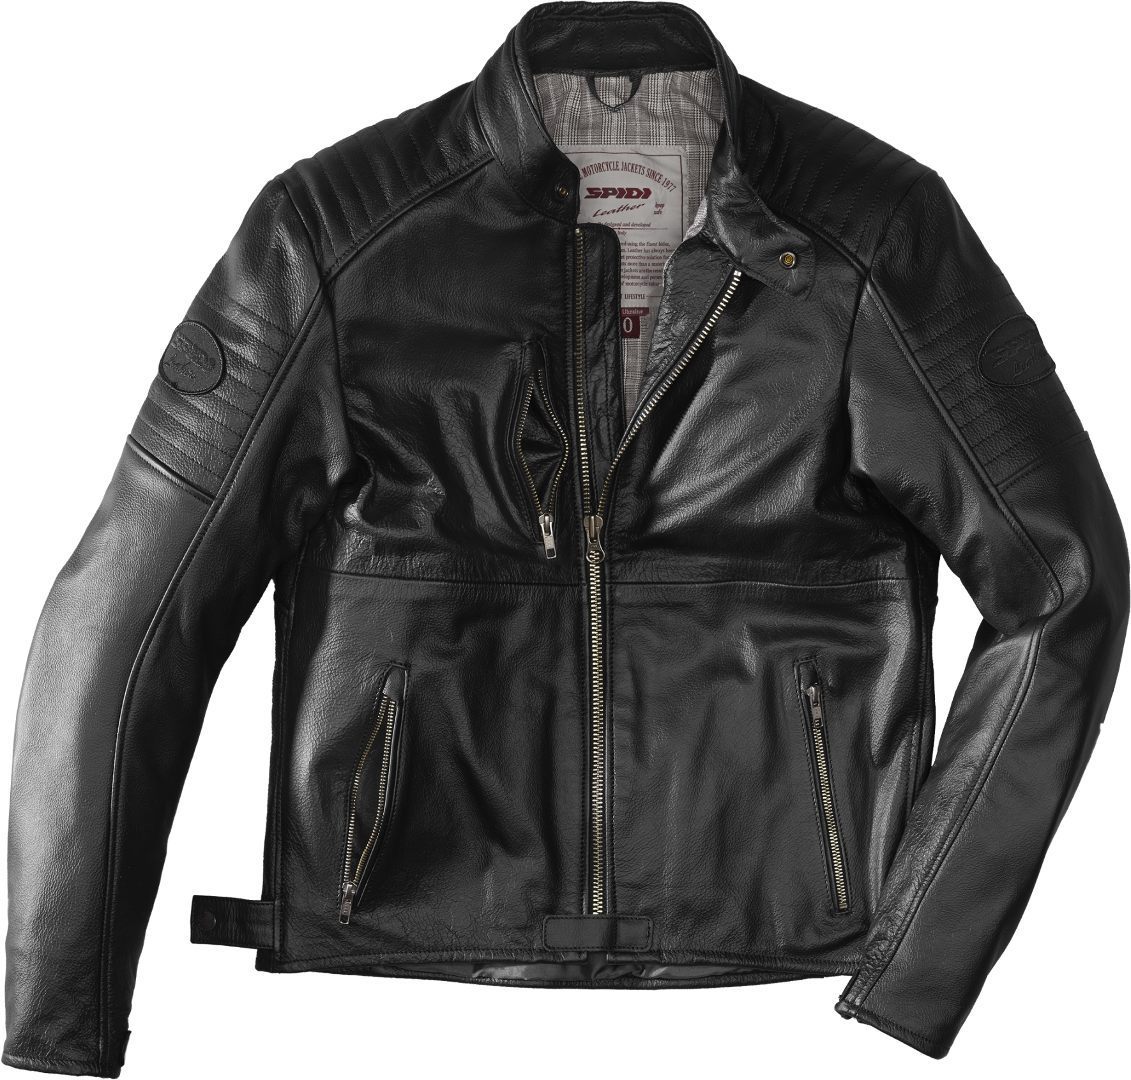 Image of Spidi Clubber Extreme Jacket Black Size 56 ID 8030161356175